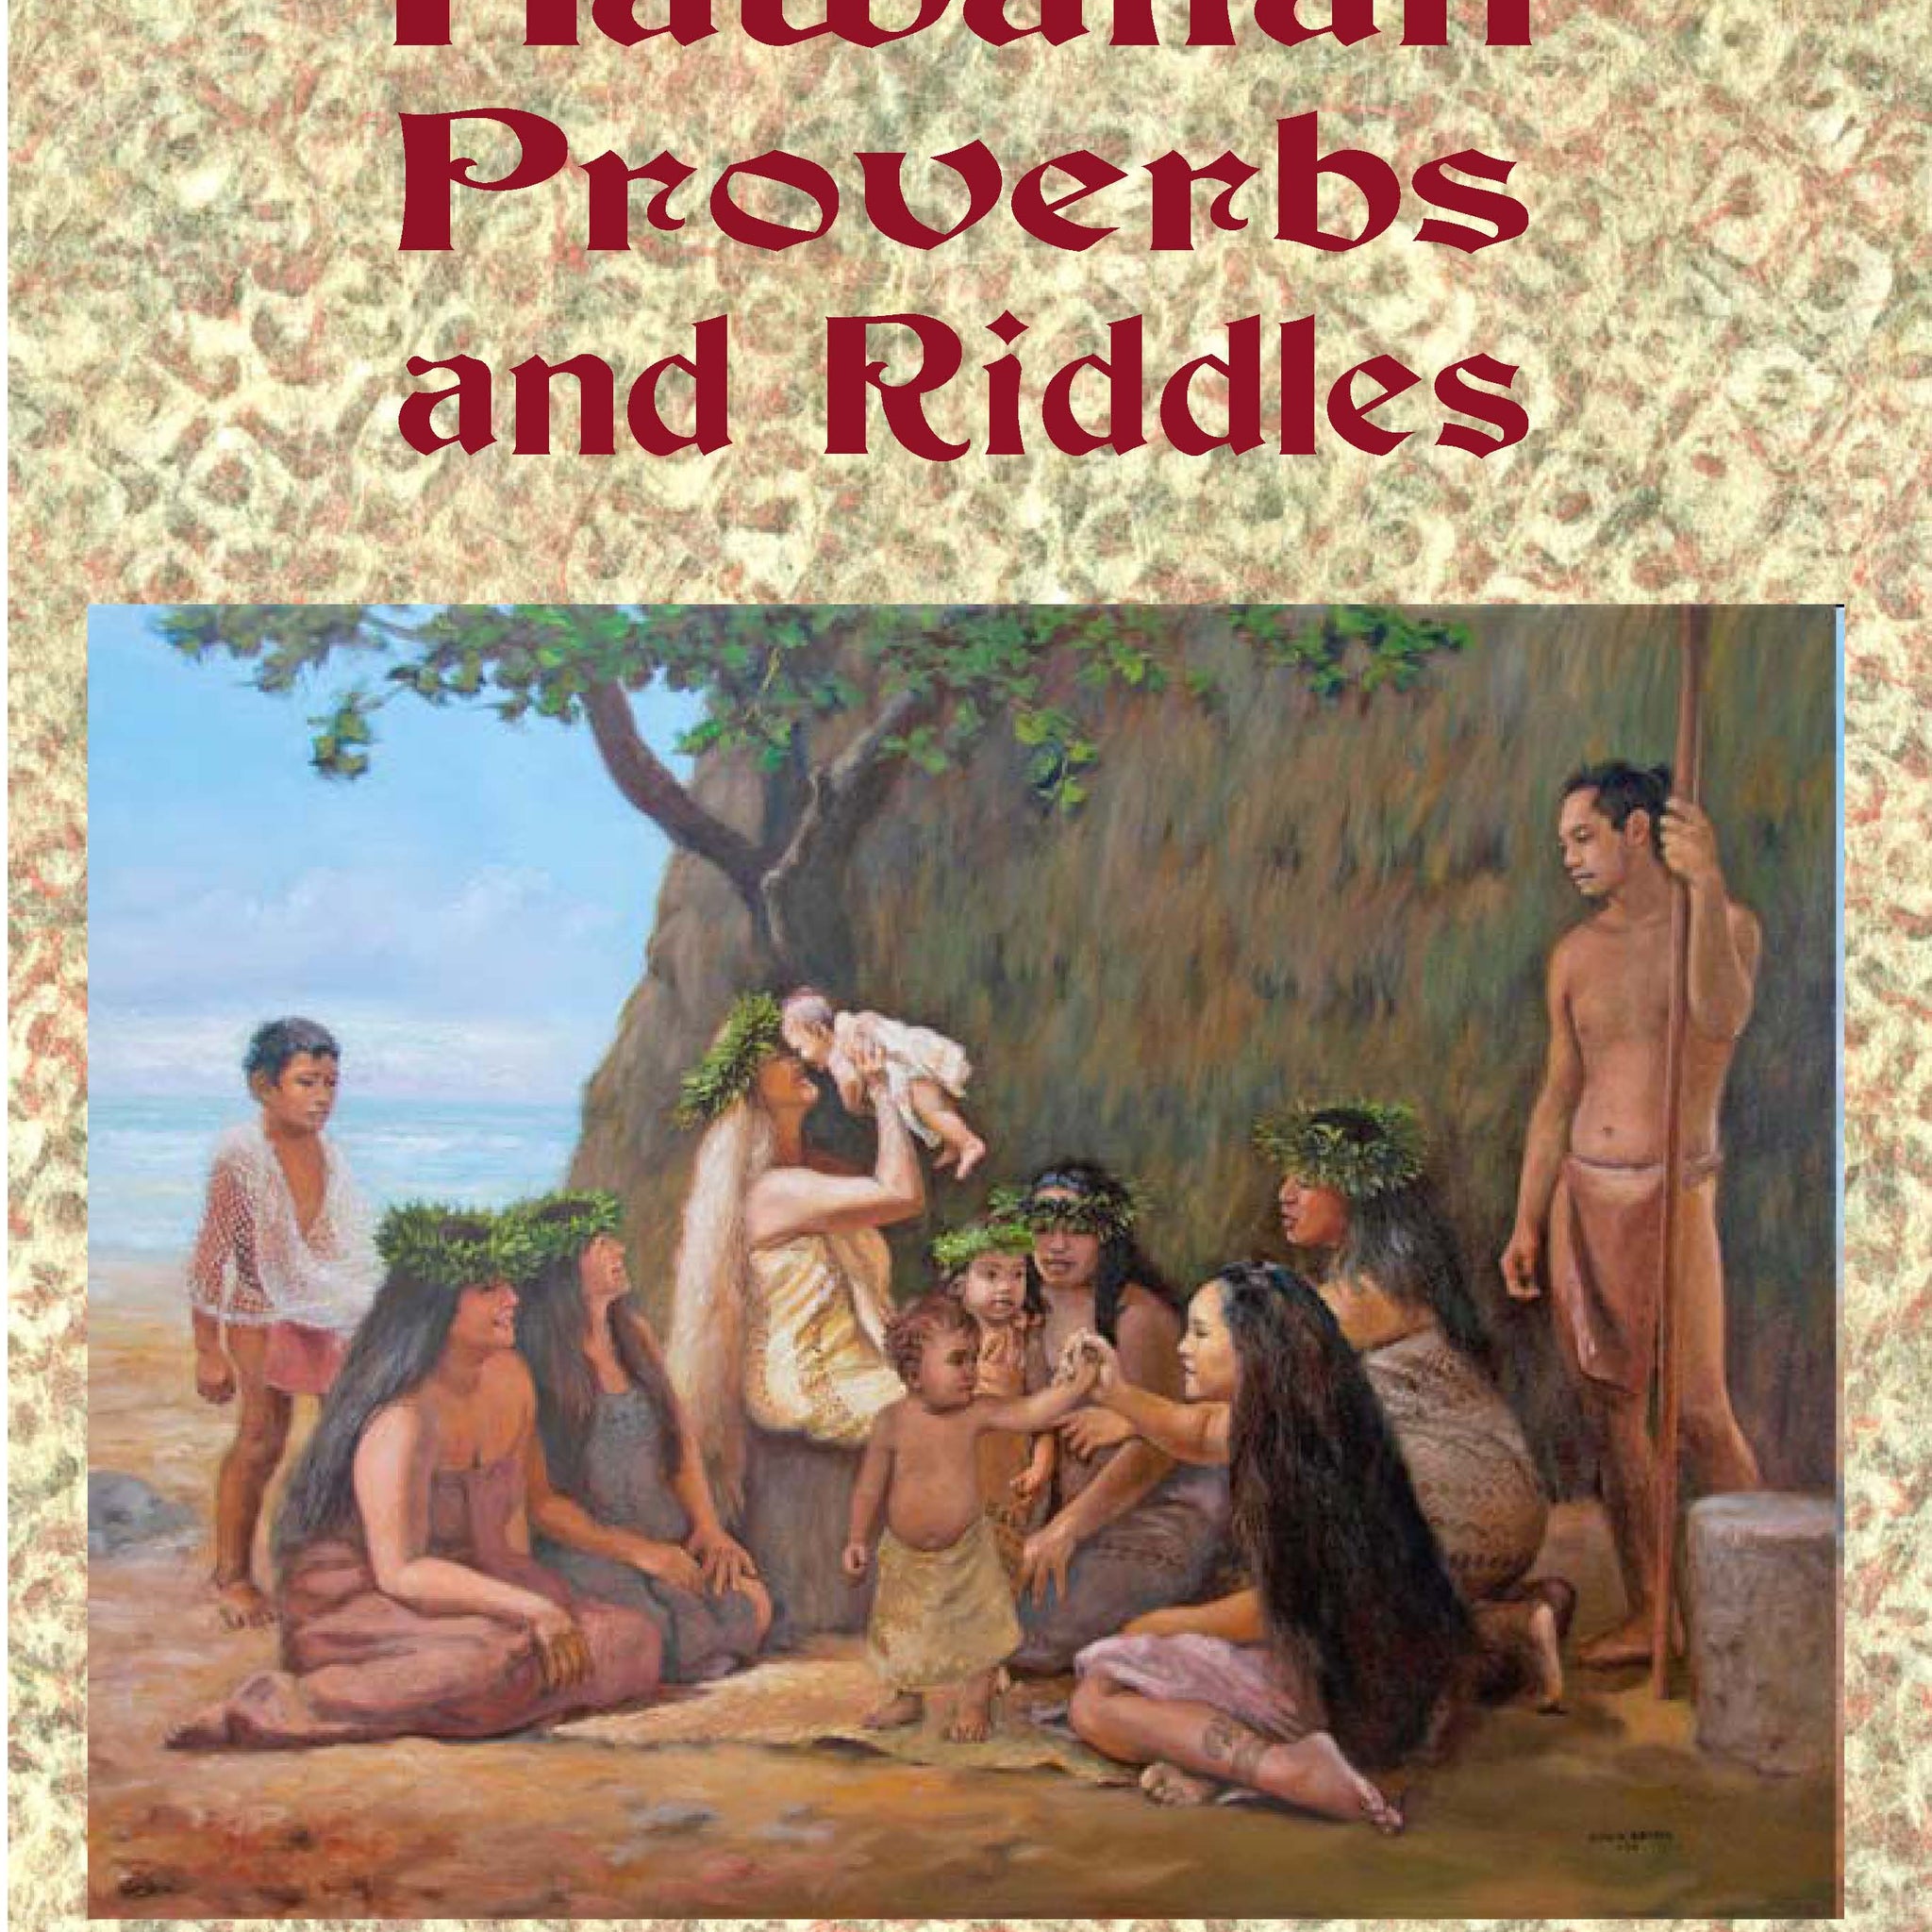 Hawaiian Proverbs and Riddles